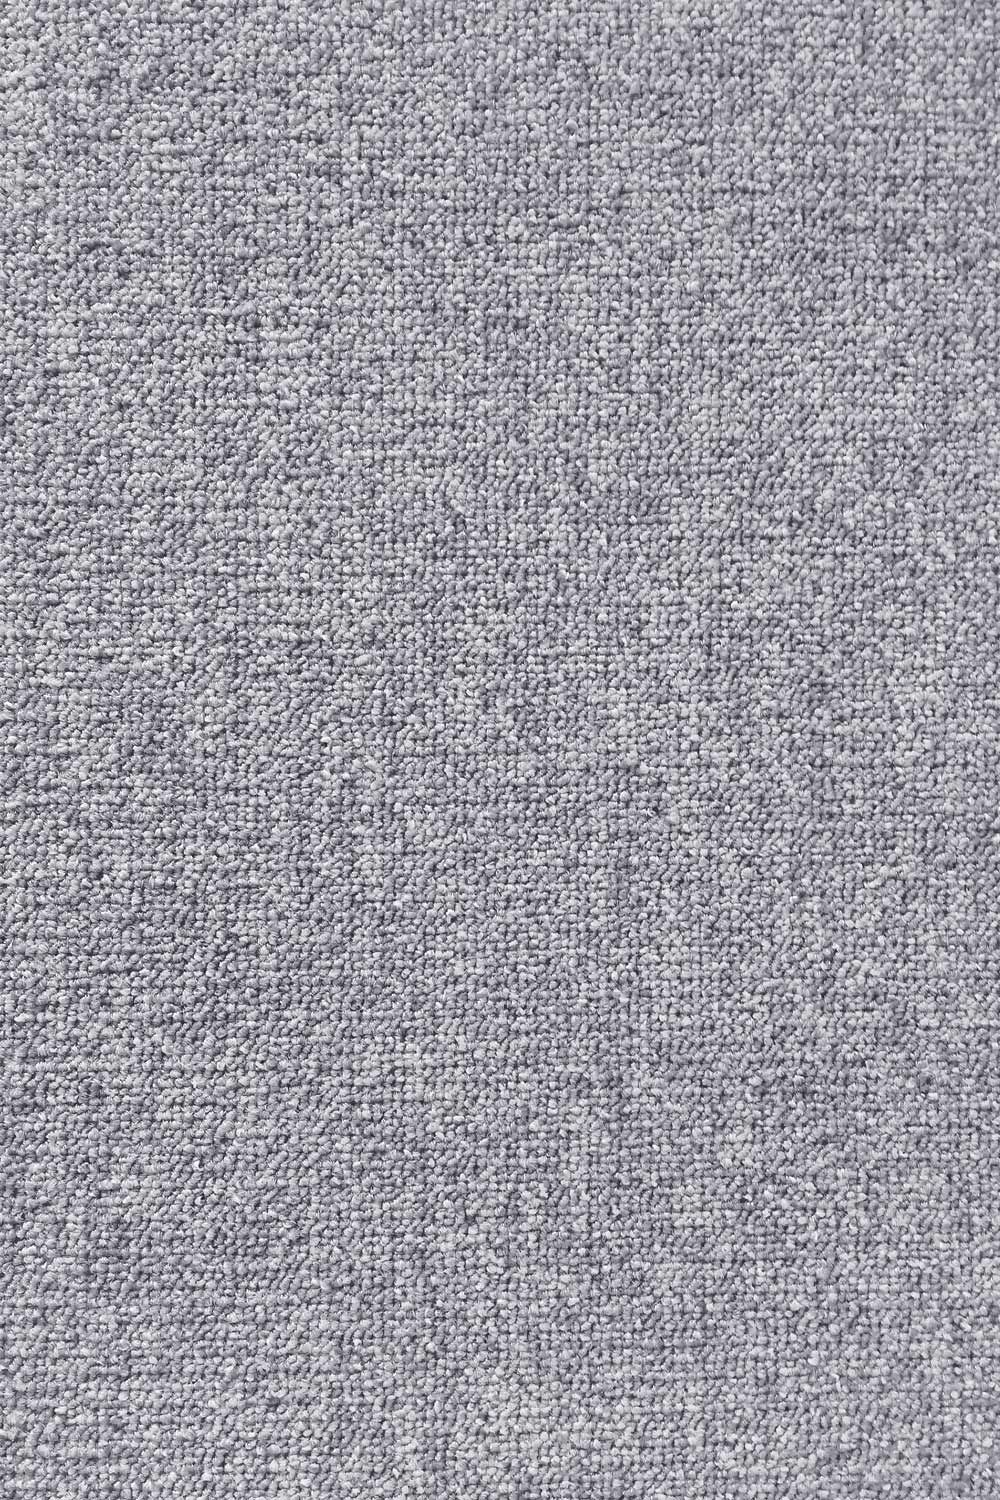 Metrážny koberec EXTREME 74 400 cm